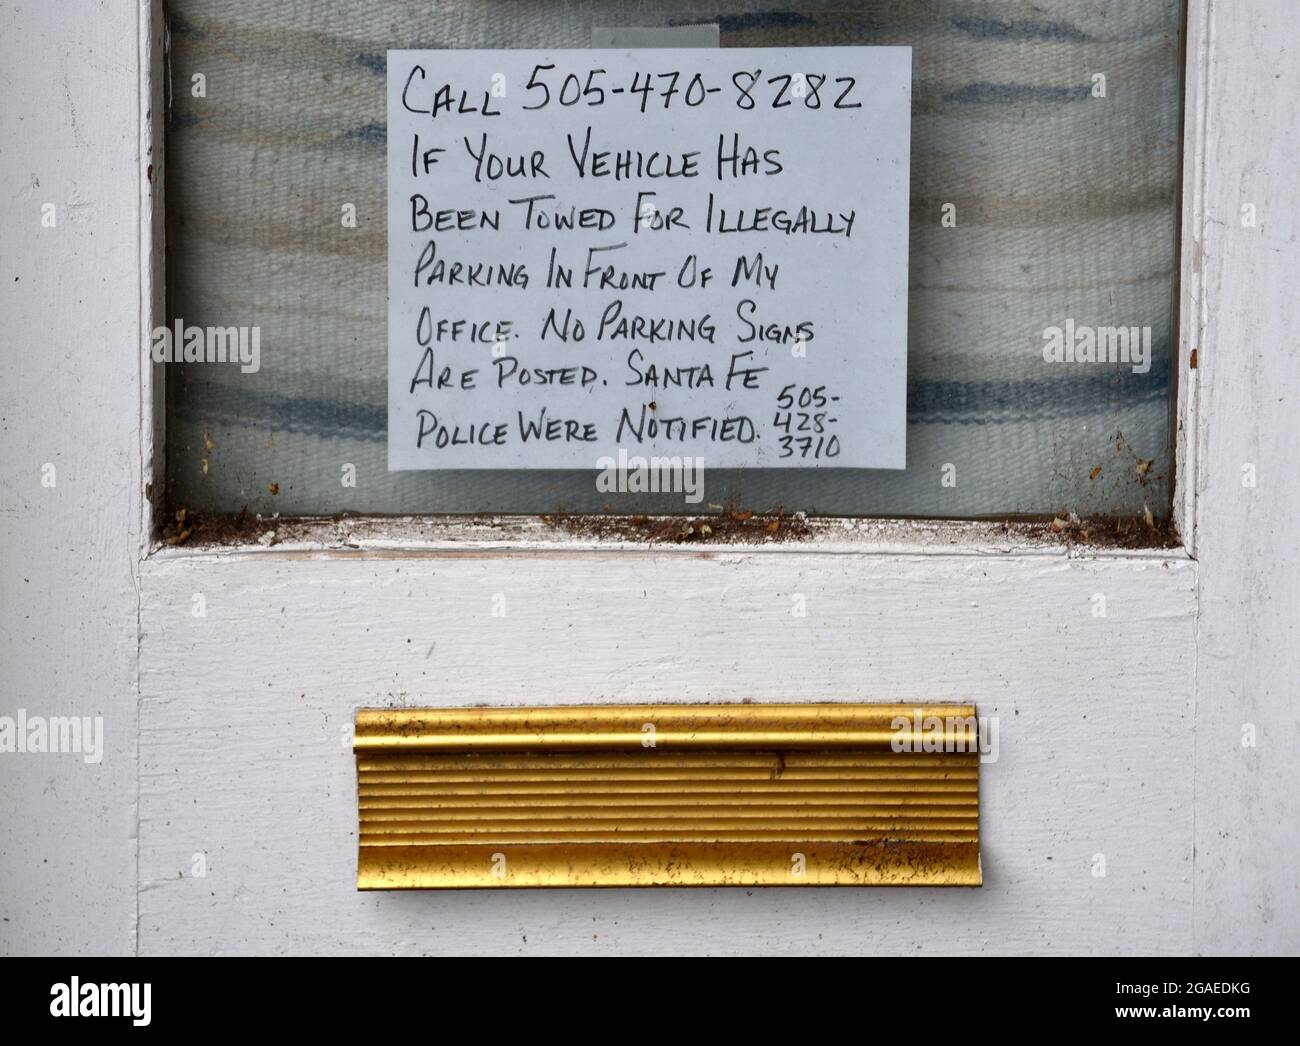 Un segno scritto a mano postato sulla porta d'ingresso di un ufficio di chiropractor a Santa Fe, New Mexico, avverte gli automobilisti di non parcheggiare di fronte alla sua attività. Foto Stock